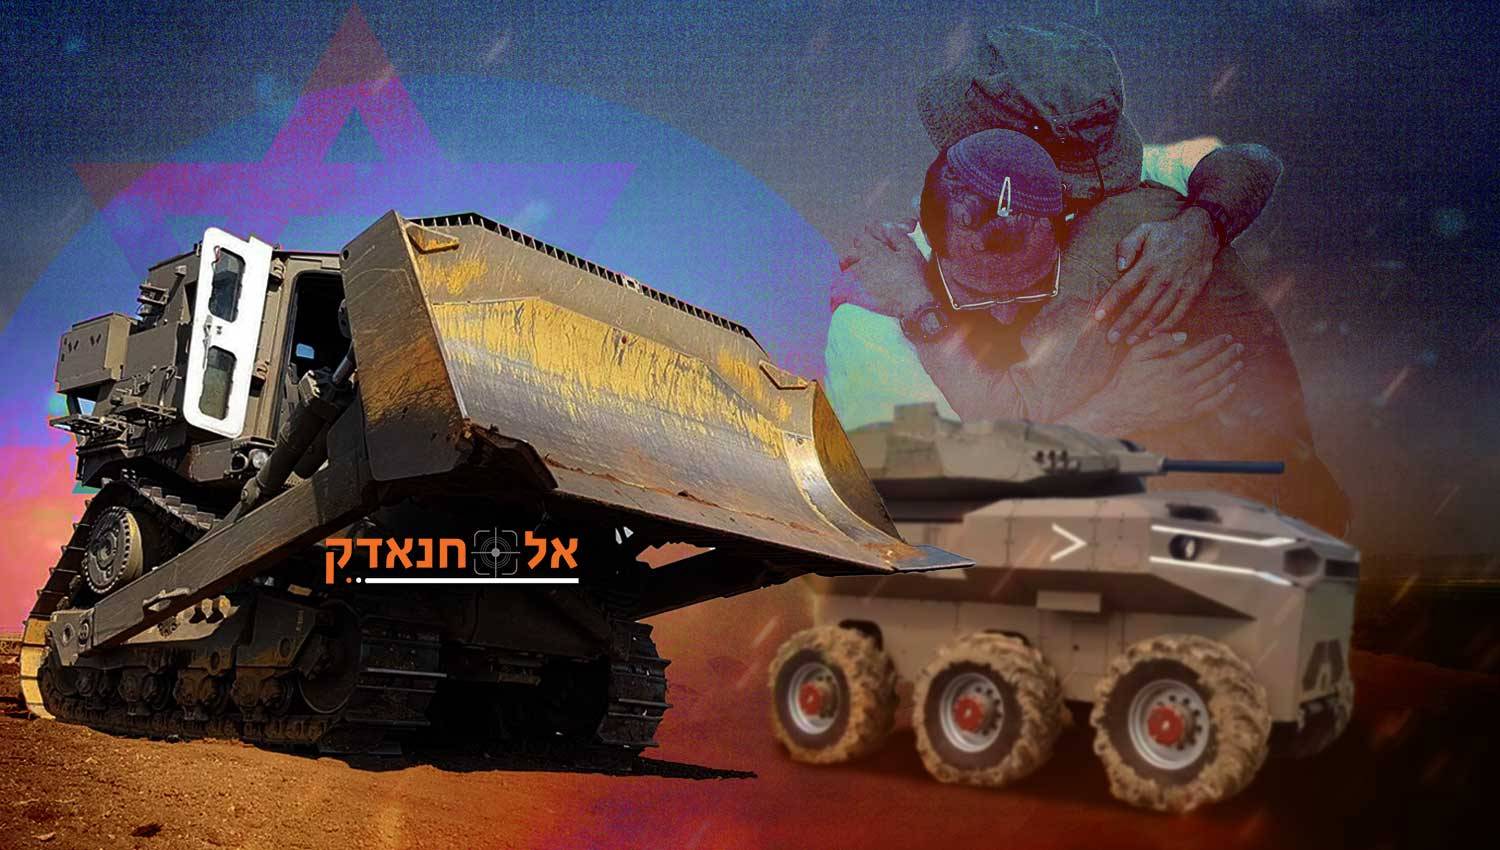 הצבא הישראלי משתמש במערכות בלתי מאוישות